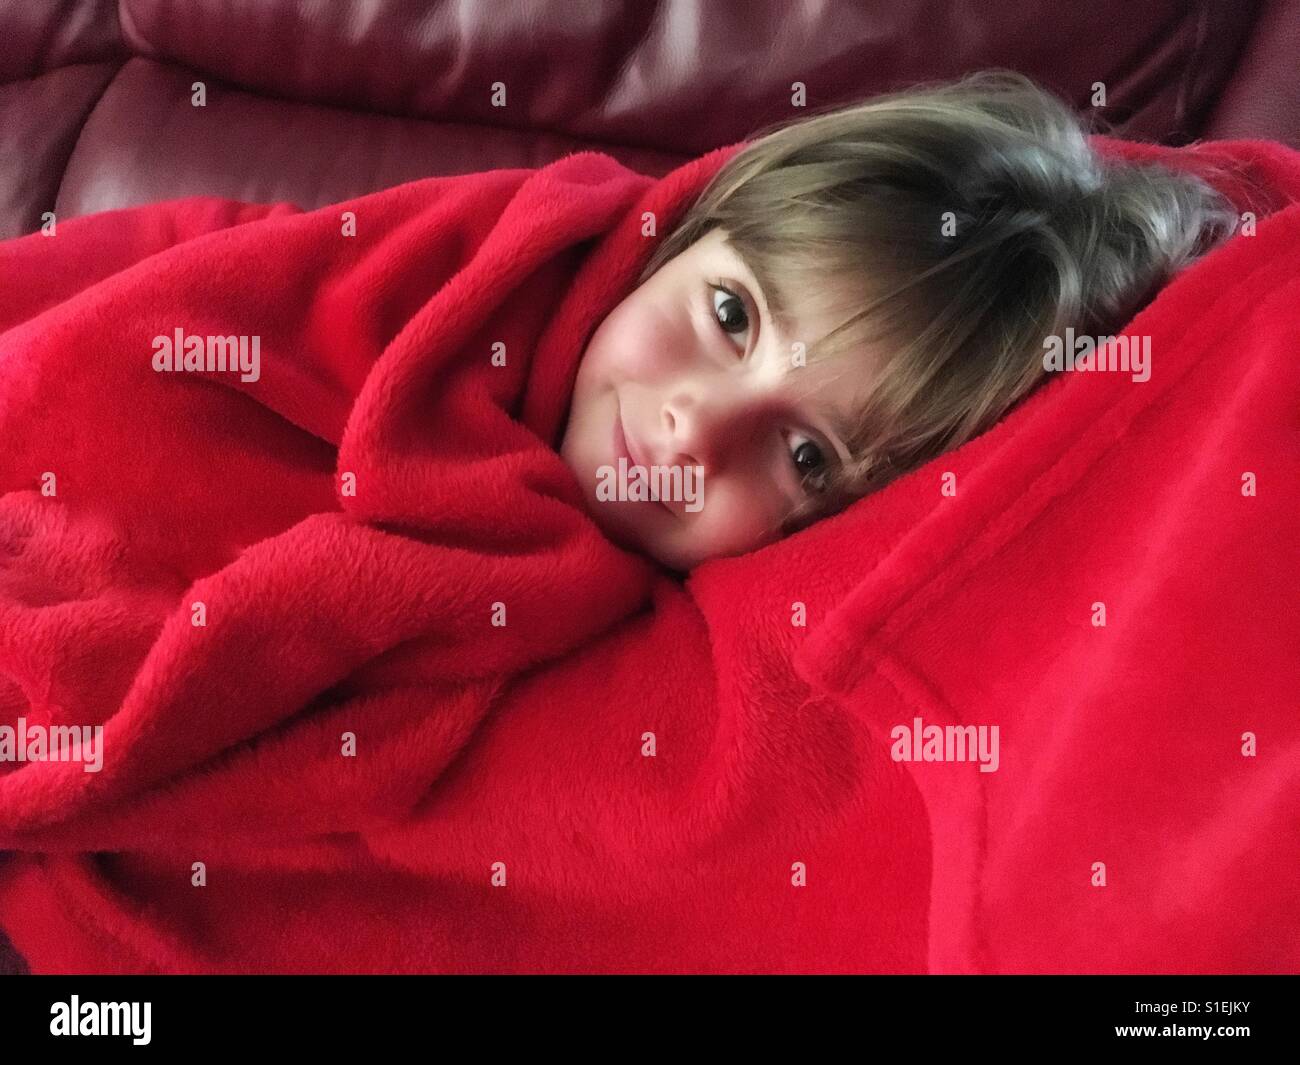 Niedliche kleine Mädchen Festlegung in einer weichen roten Decke eingewickelt. Lächelndes Gesicht der hübschen Kind krank zu Hause. Stockfoto